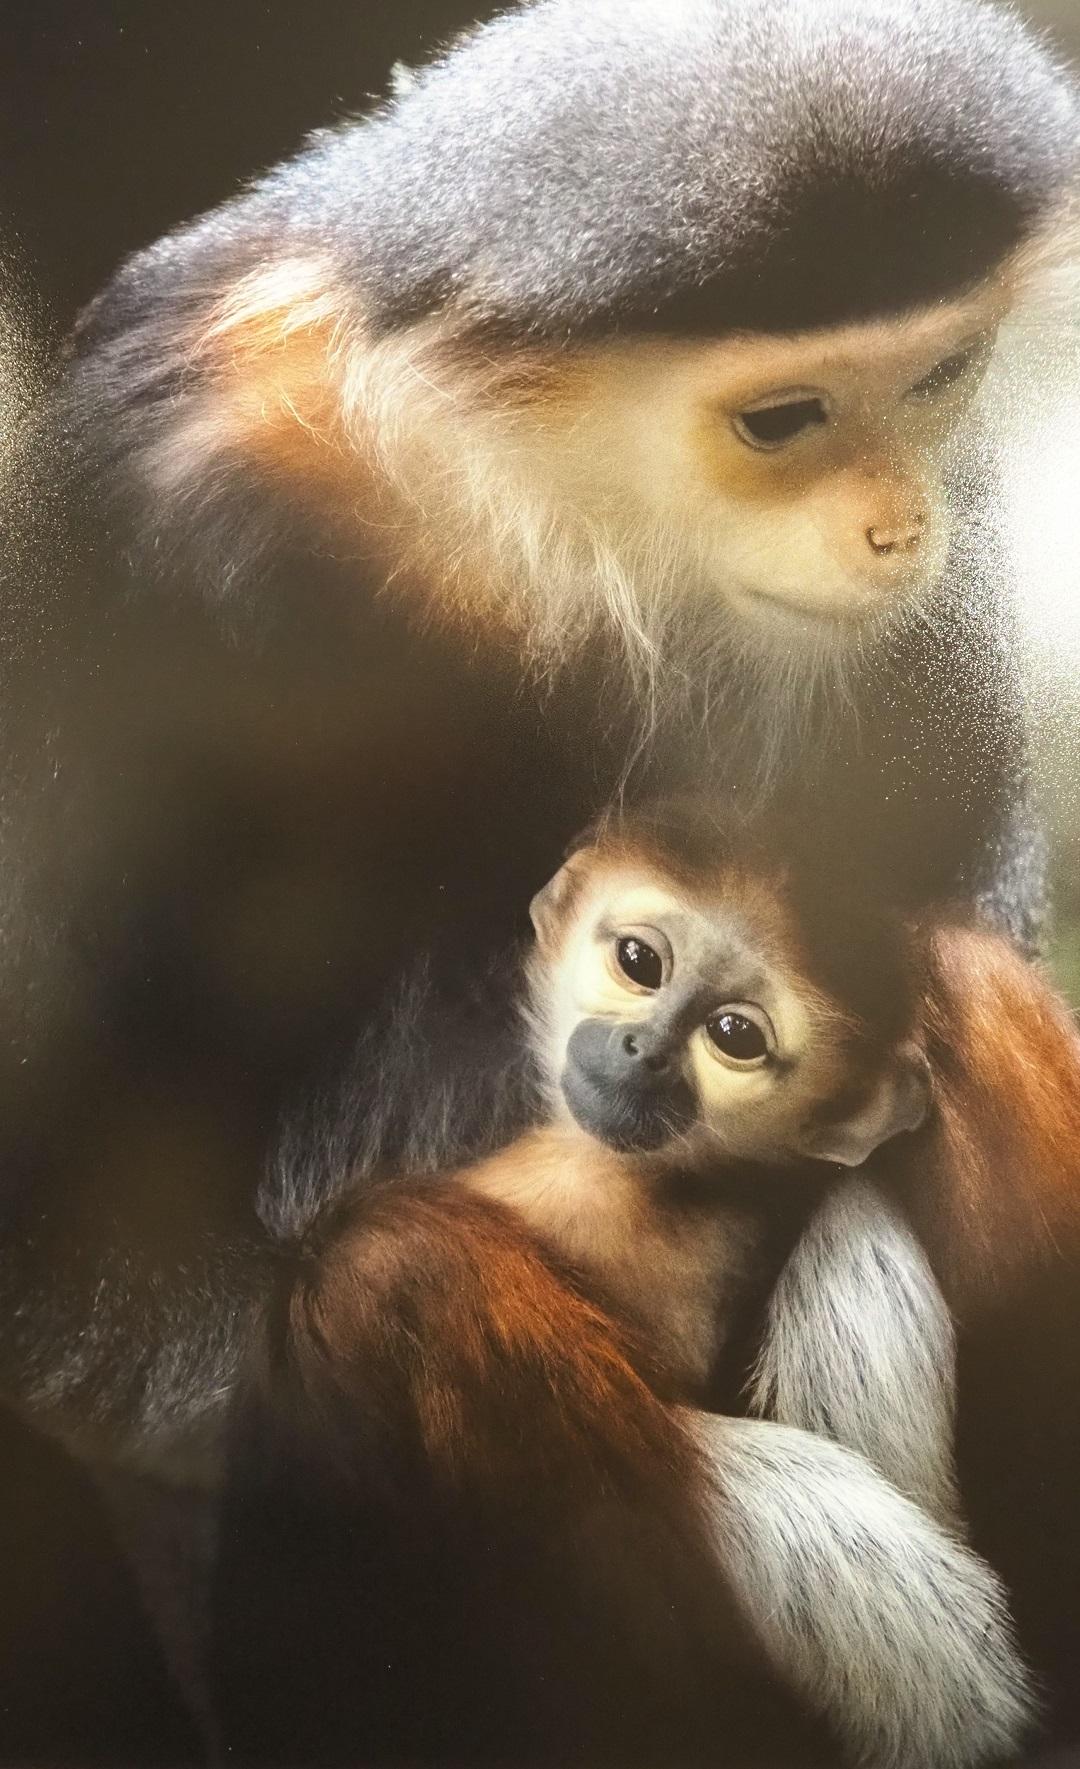 母猿に抱かれた子猿がカメラを見ているような写真